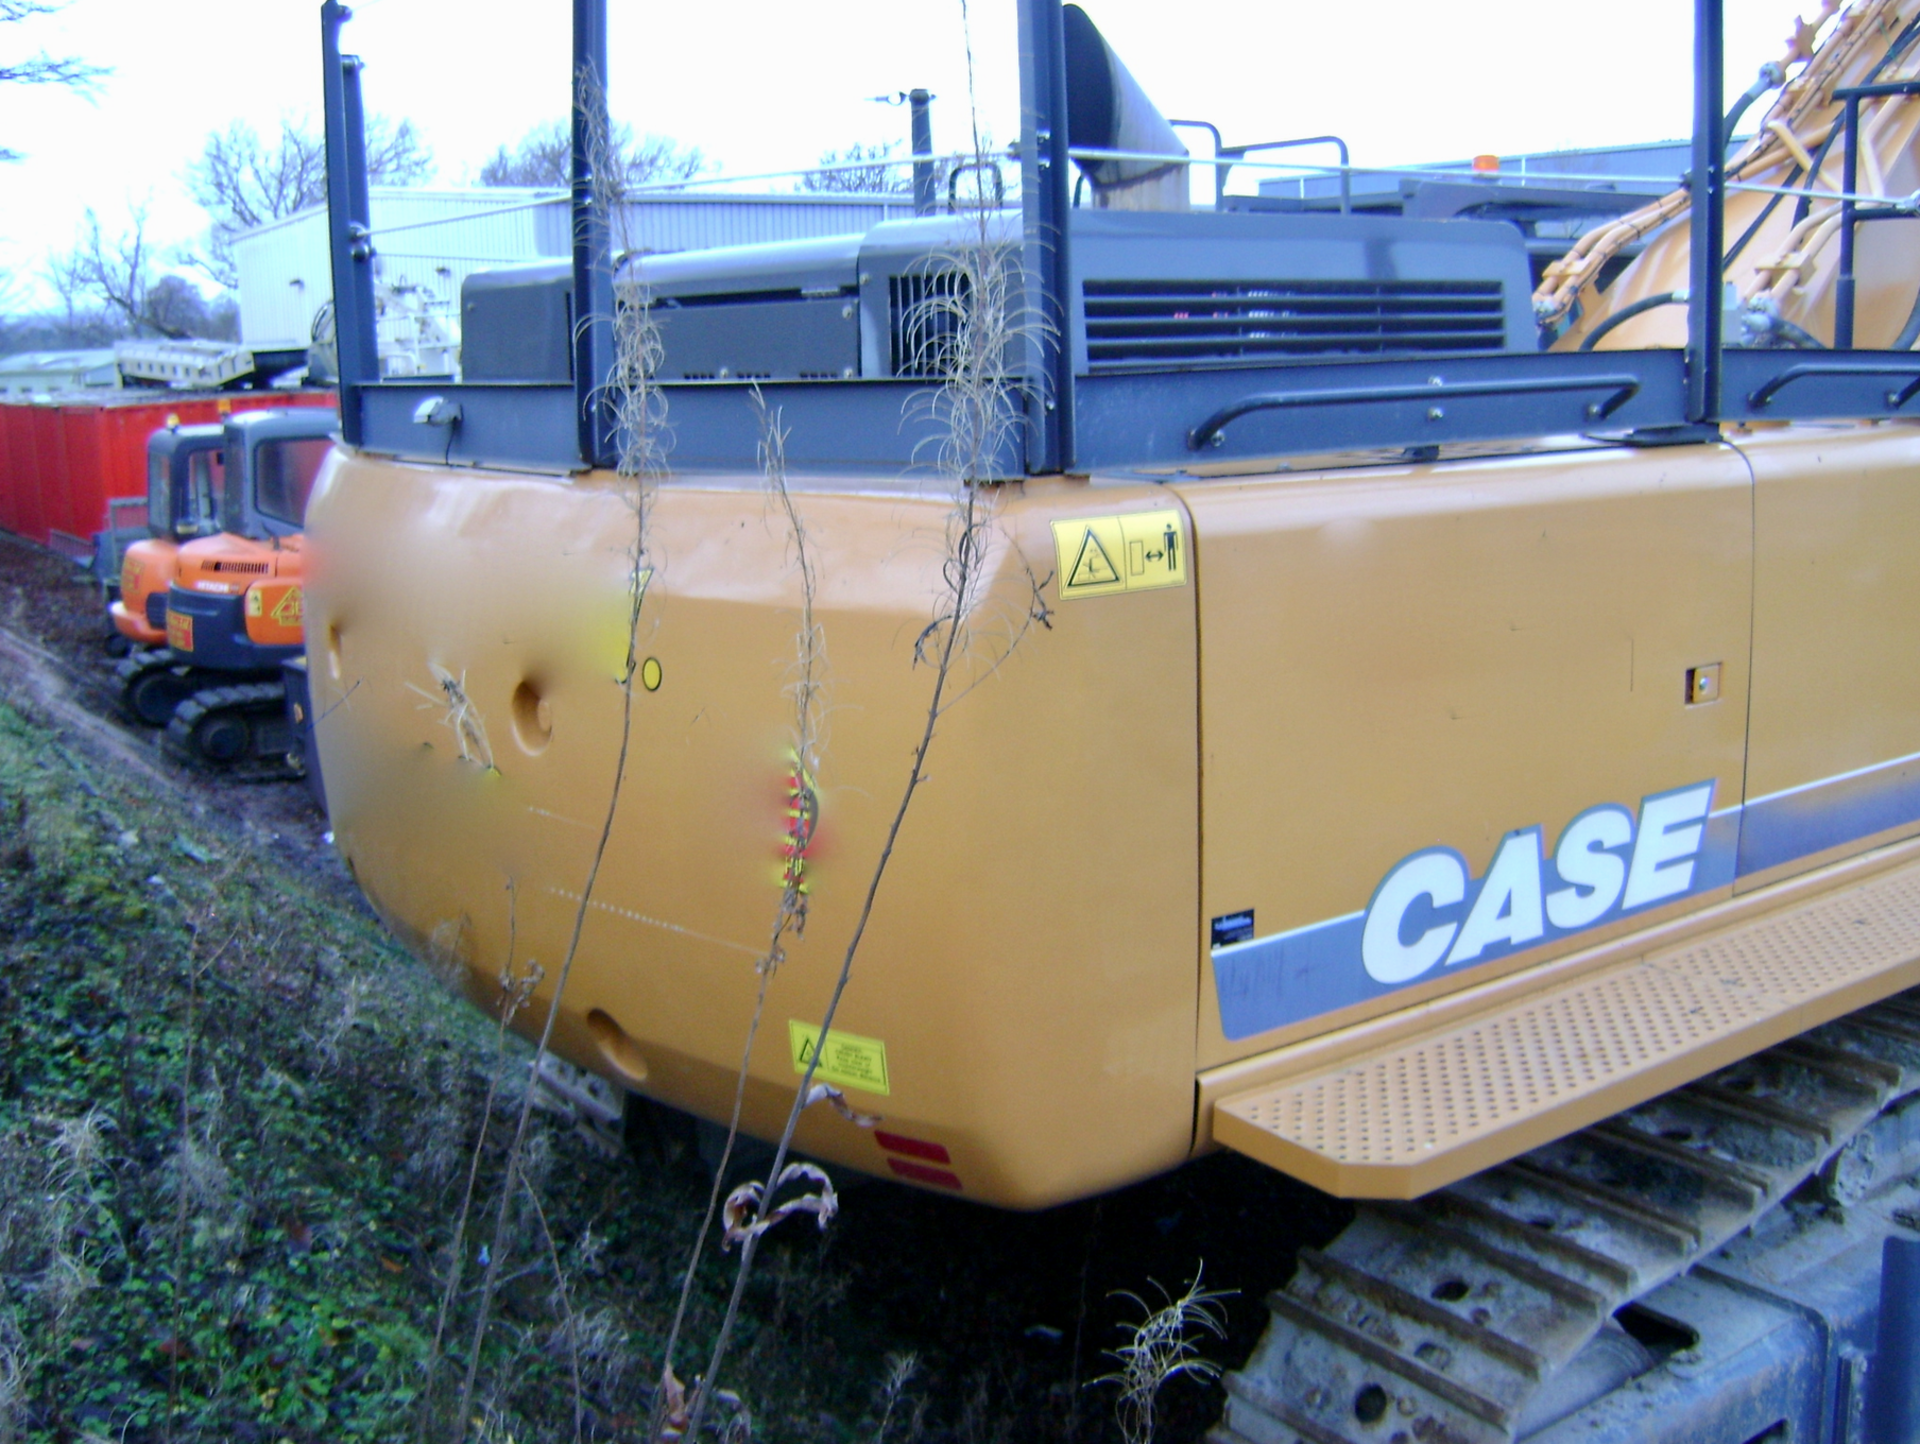 Case CX800 Tracked 80 Ton Excavator - Image 6 of 9